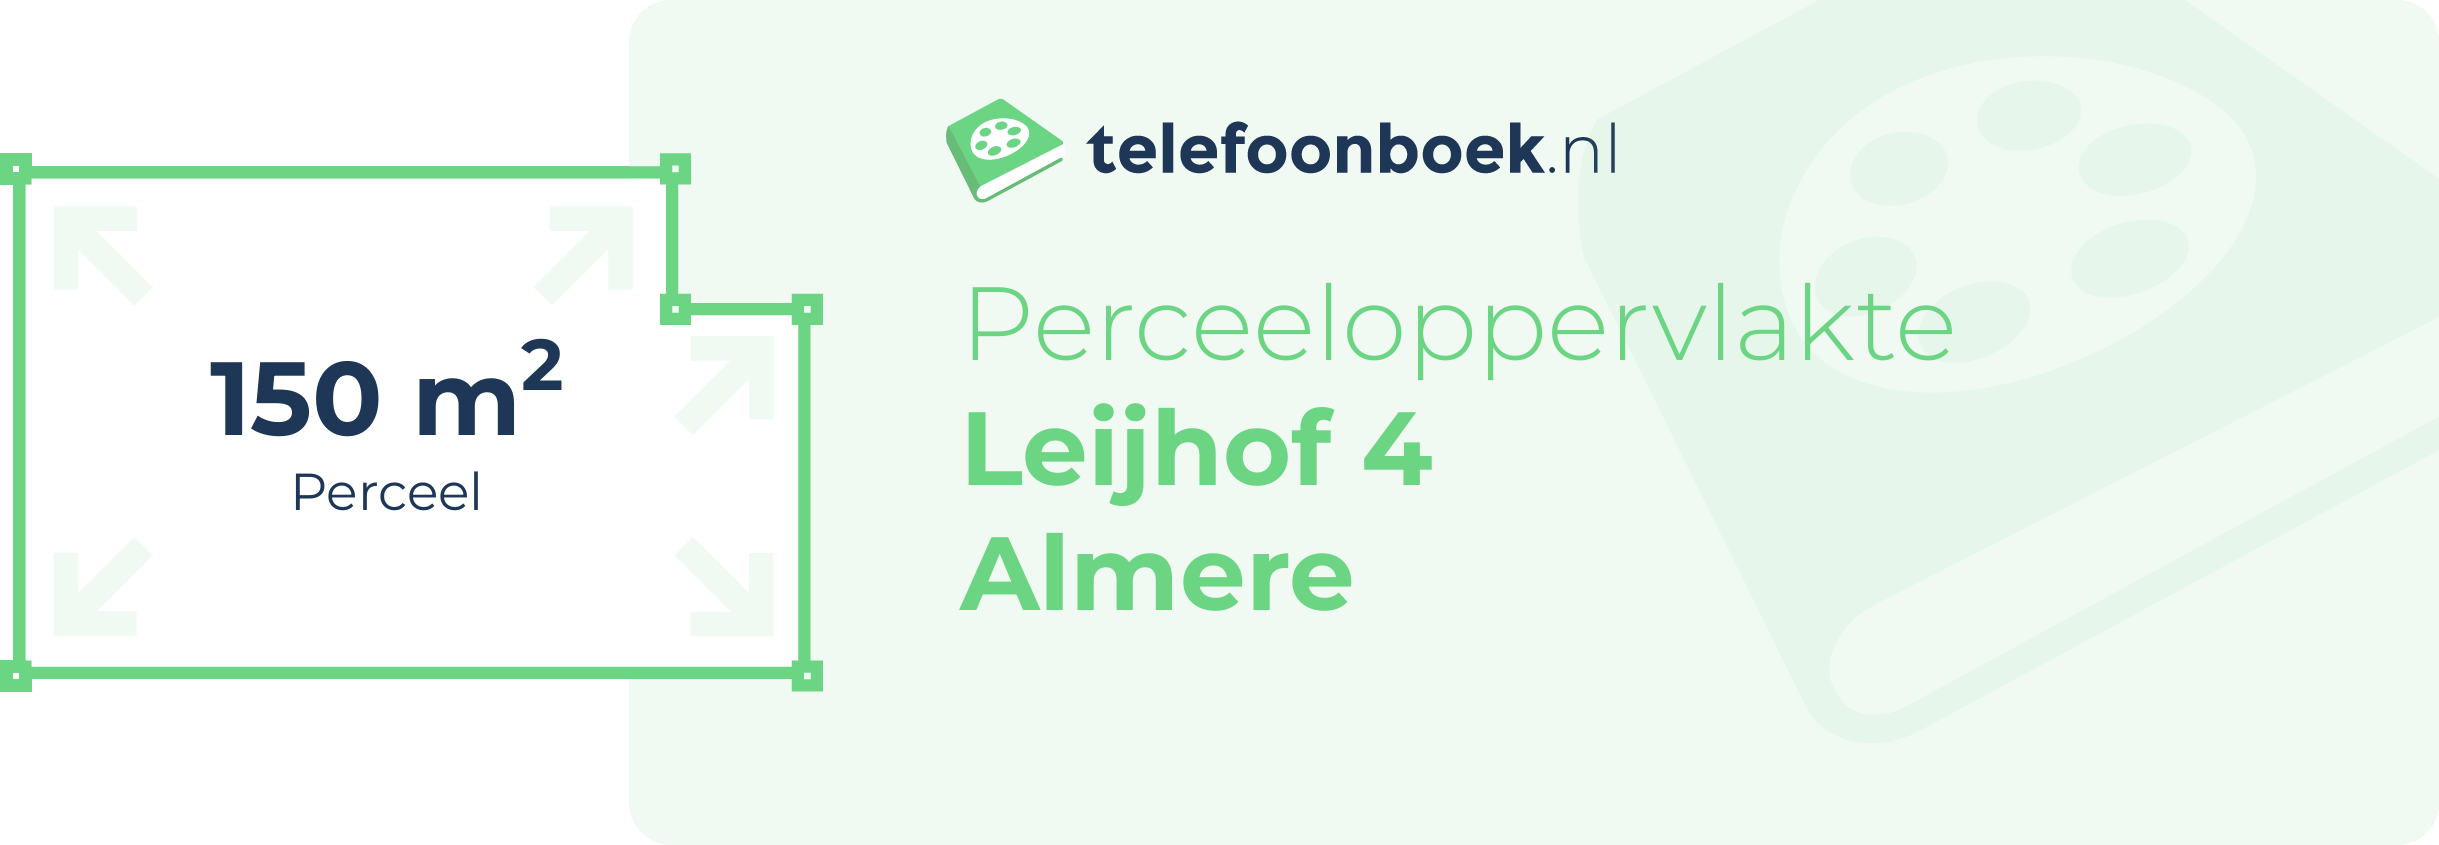 Perceeloppervlakte Leijhof 4 Almere